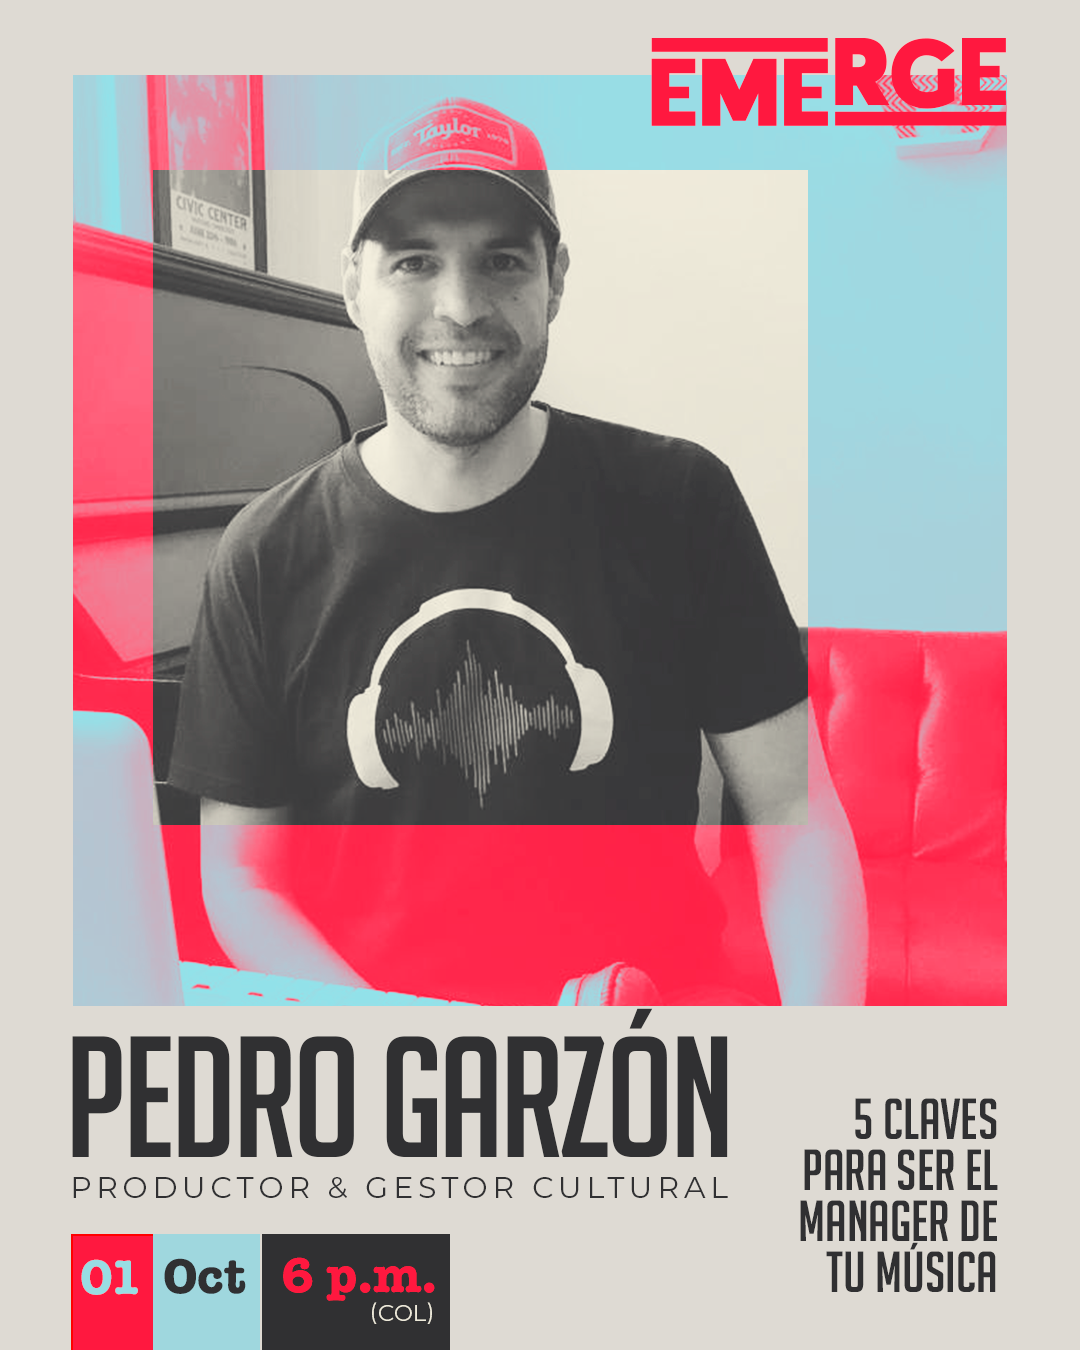 5 claves para ser el manager de tu música – Pedro Garzon